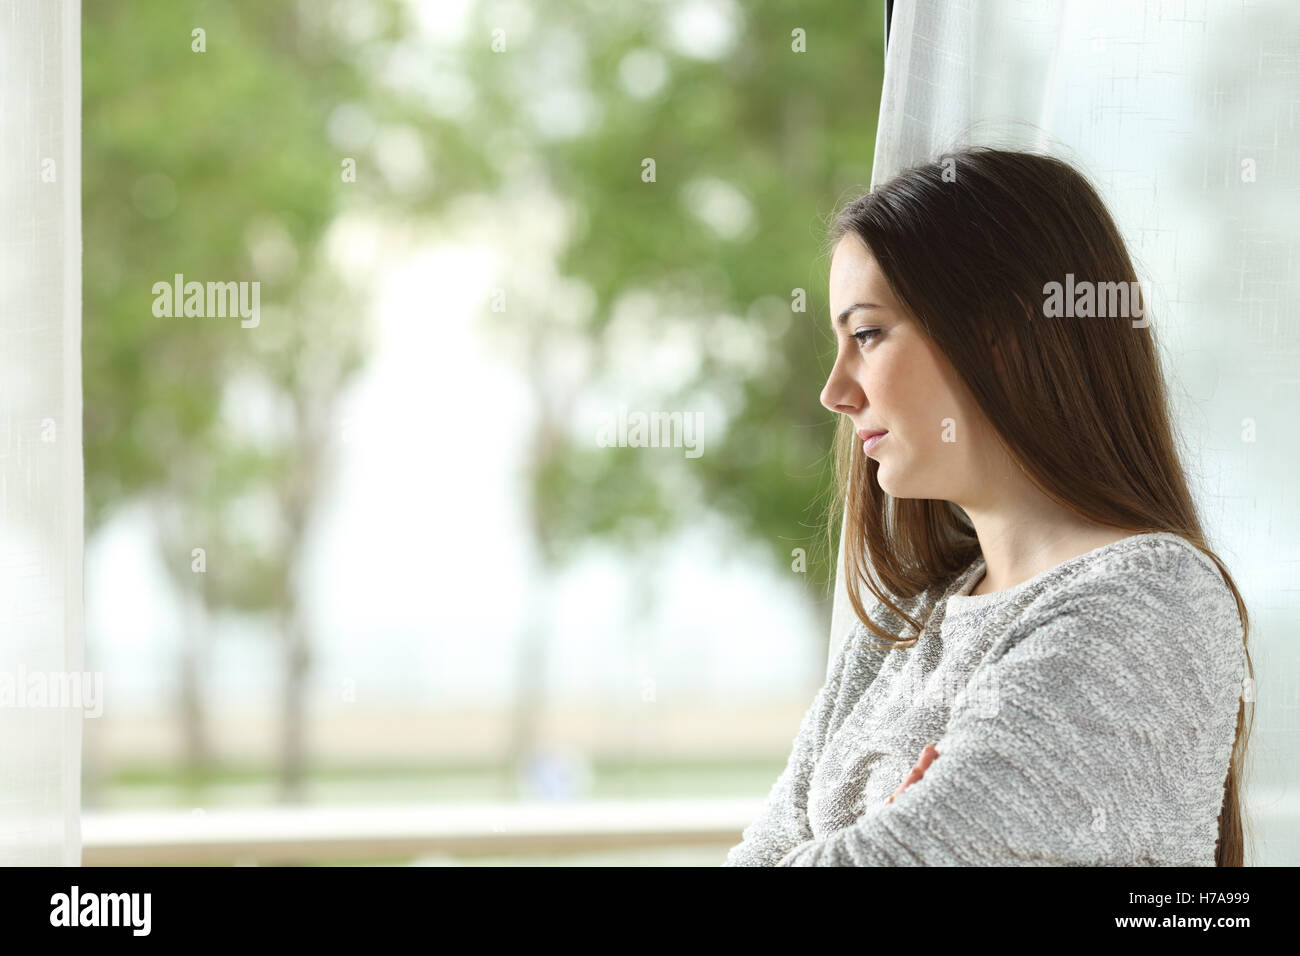 Portrait de profil d'une femme aspirant à l'extérieur à travers une fenêtre à la maison ou chambre d'hôtel avec un fond vert Banque D'Images